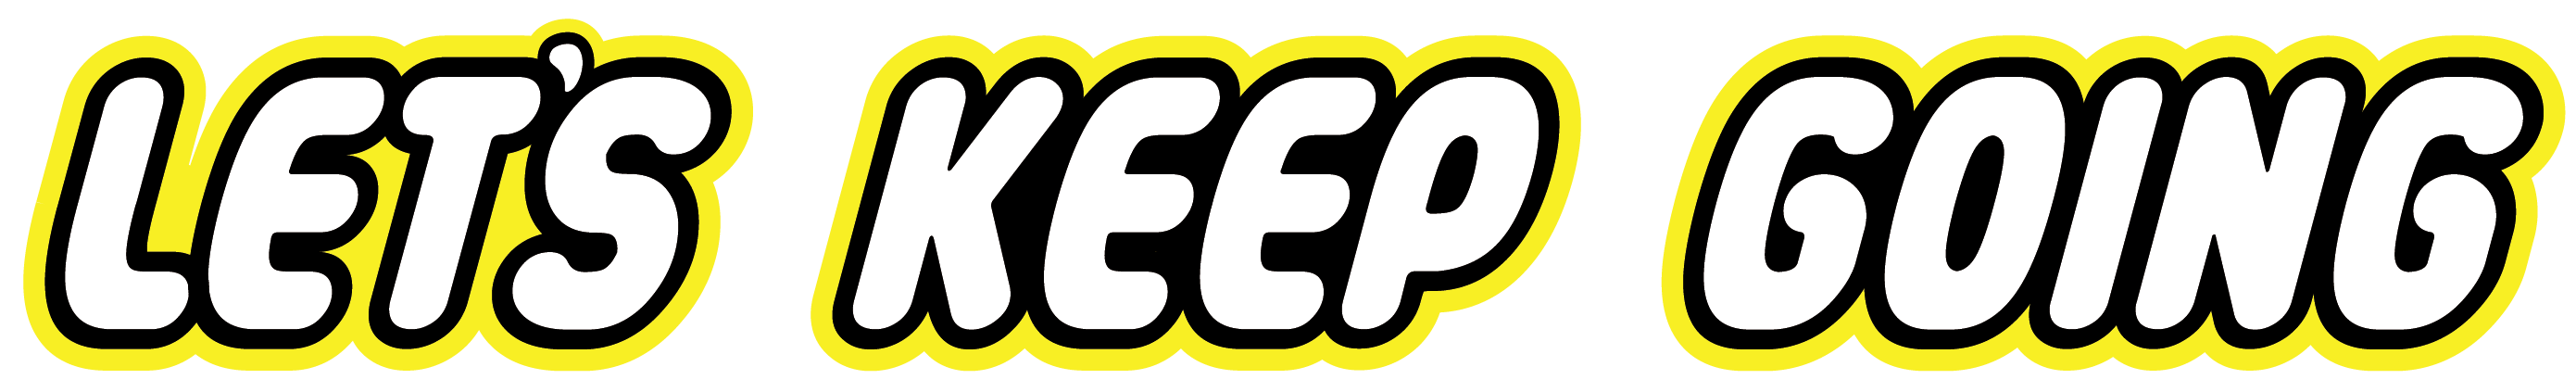 Let'sKeepGoing-Logo_Logo.png